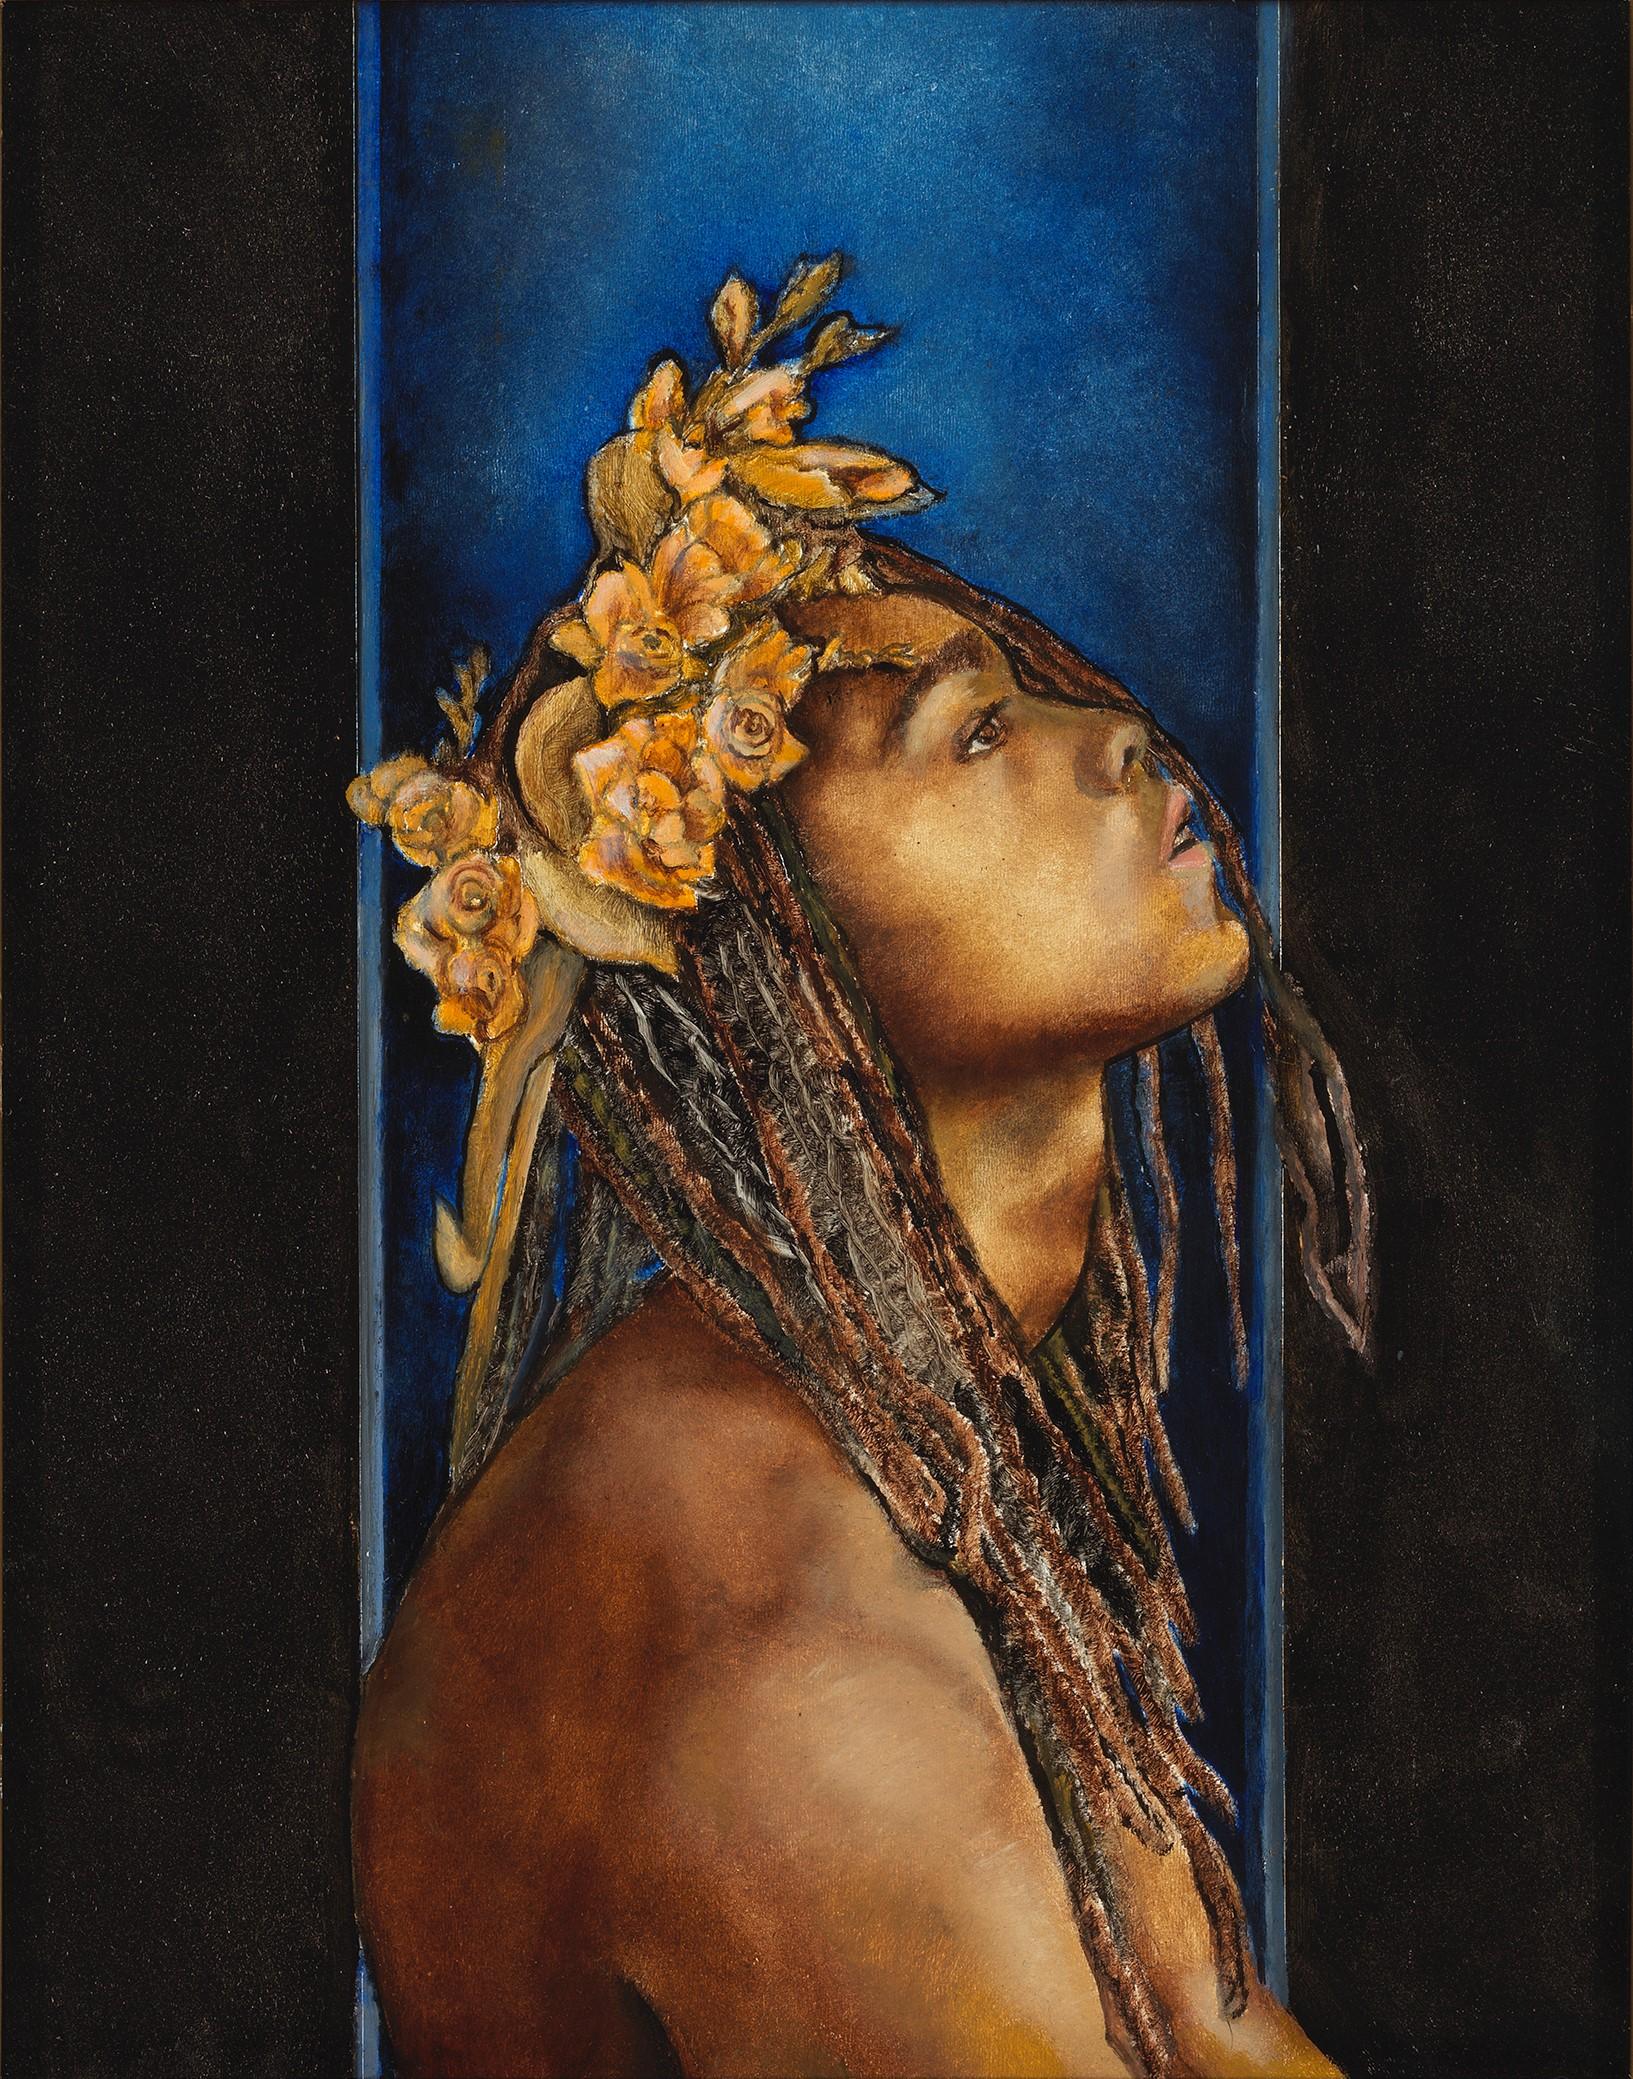 Eden – männliches Aktporträt mit Zifferblättern auf marineblauem Hintergrund – Painting von Richard Gibbons